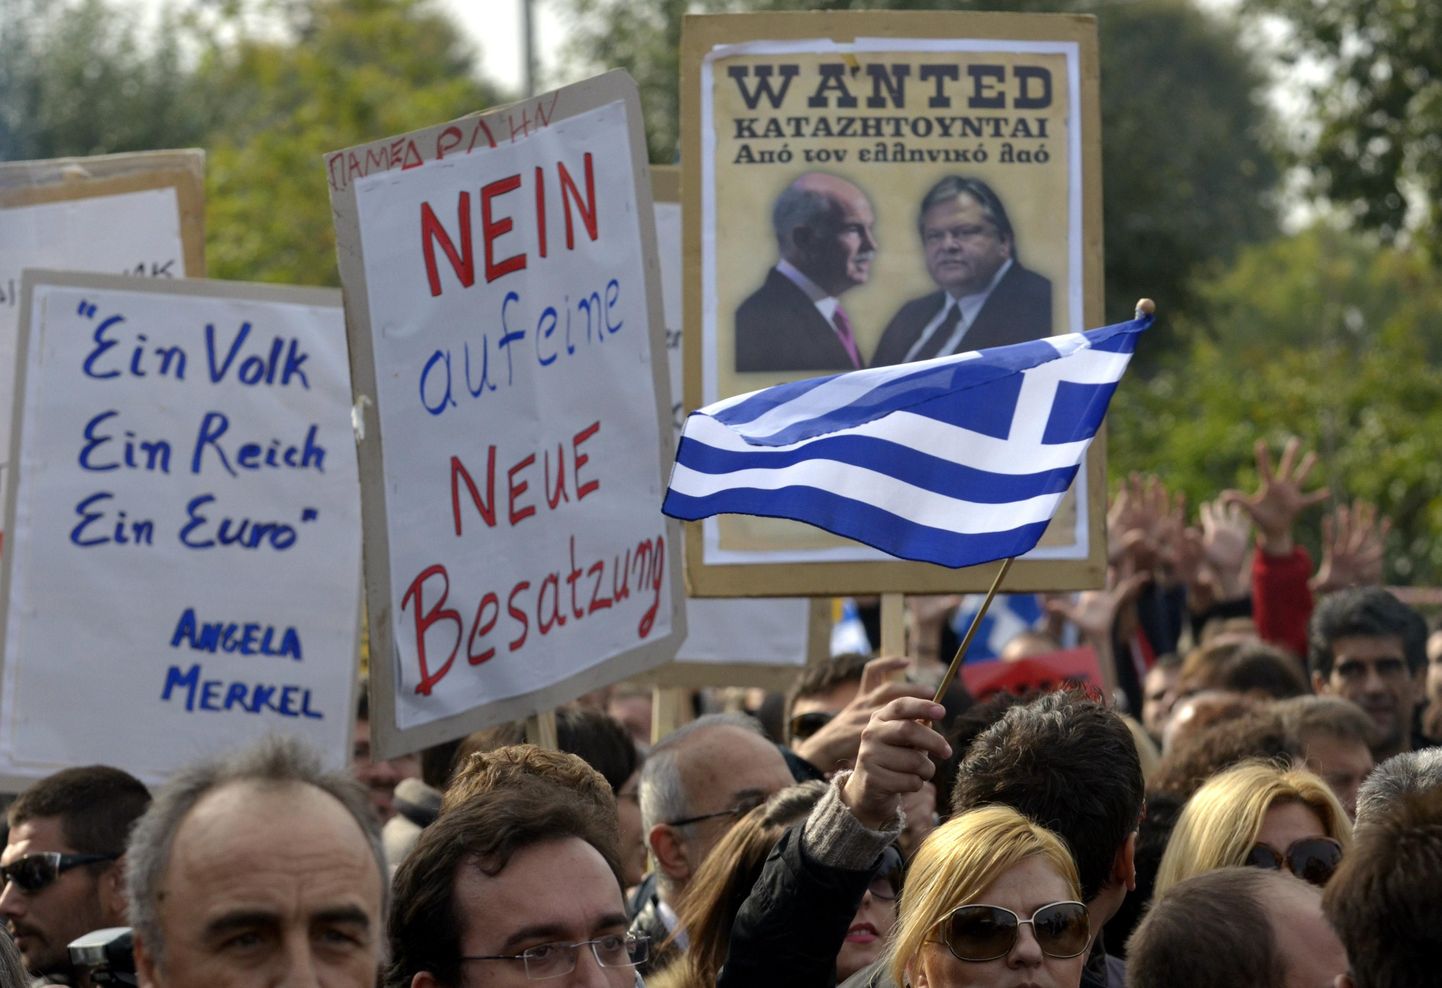 Kreeklased protestimas